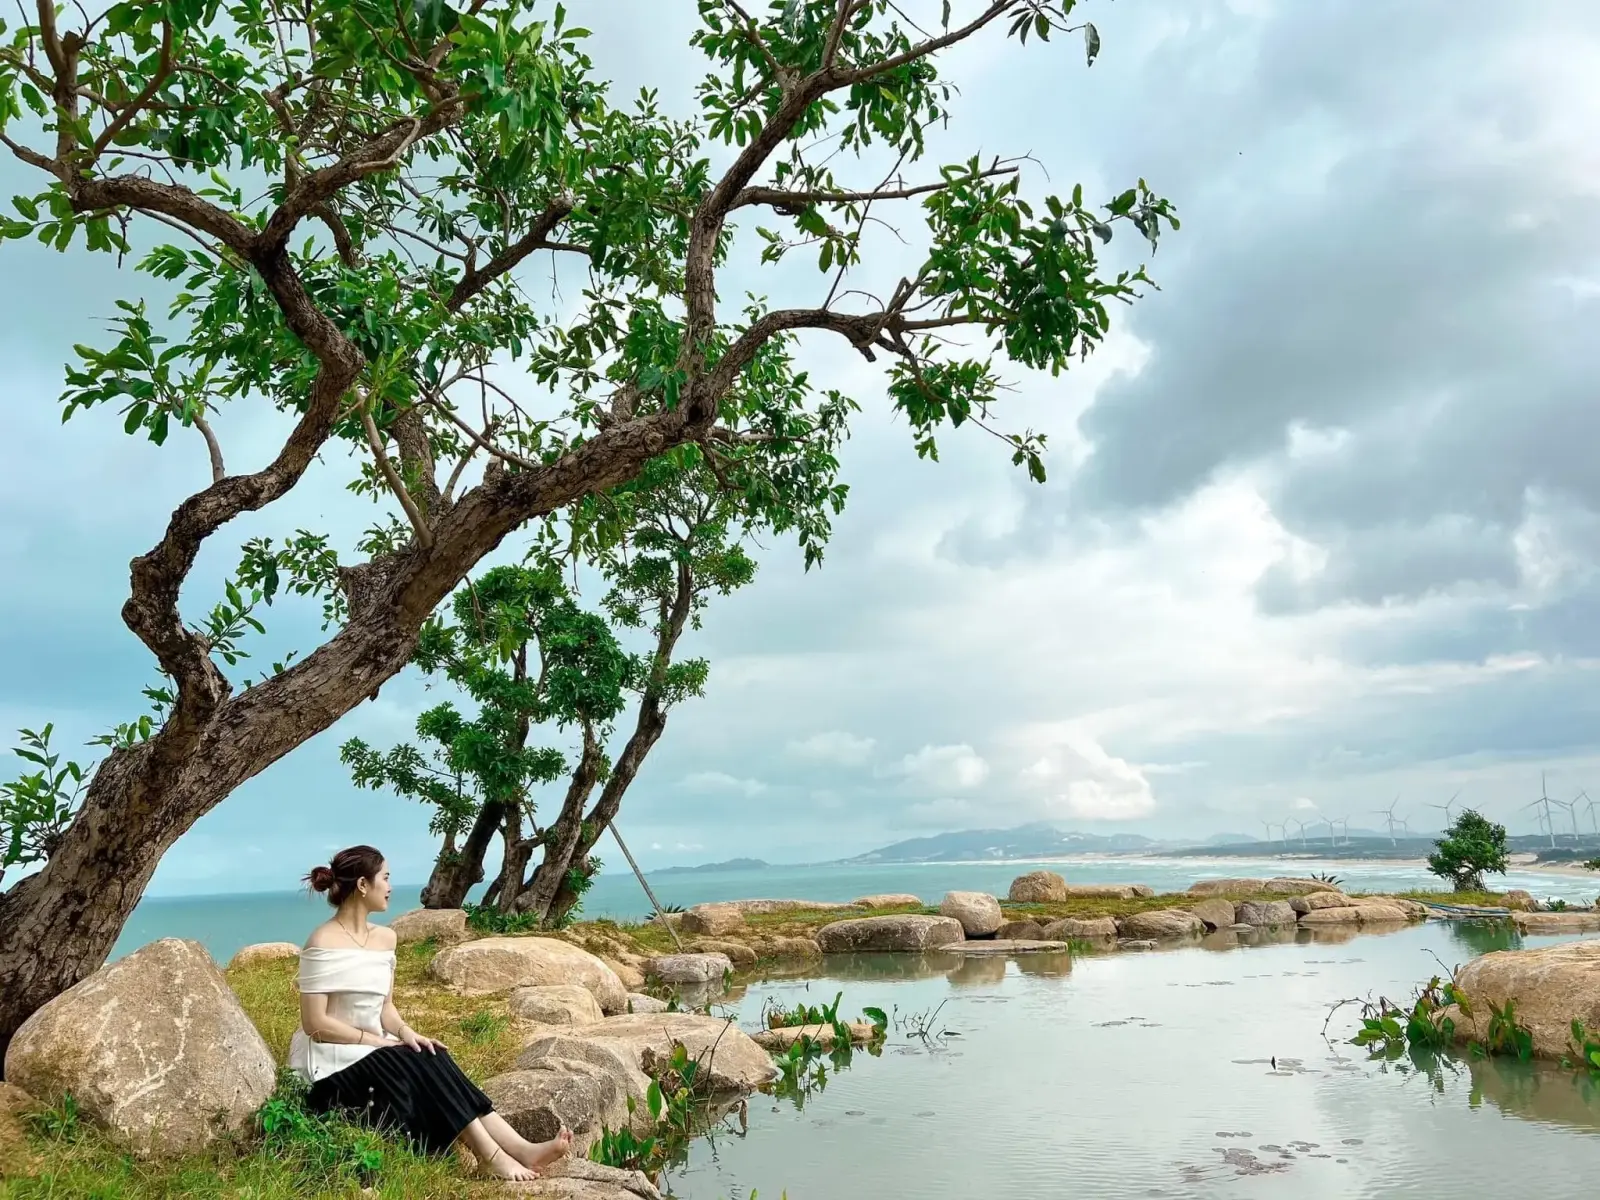 Chương trình du lịch chữa lành: Hành trình An Yên - Tái tạo năng lượng bản thân tại Ohana Village - Bình Định